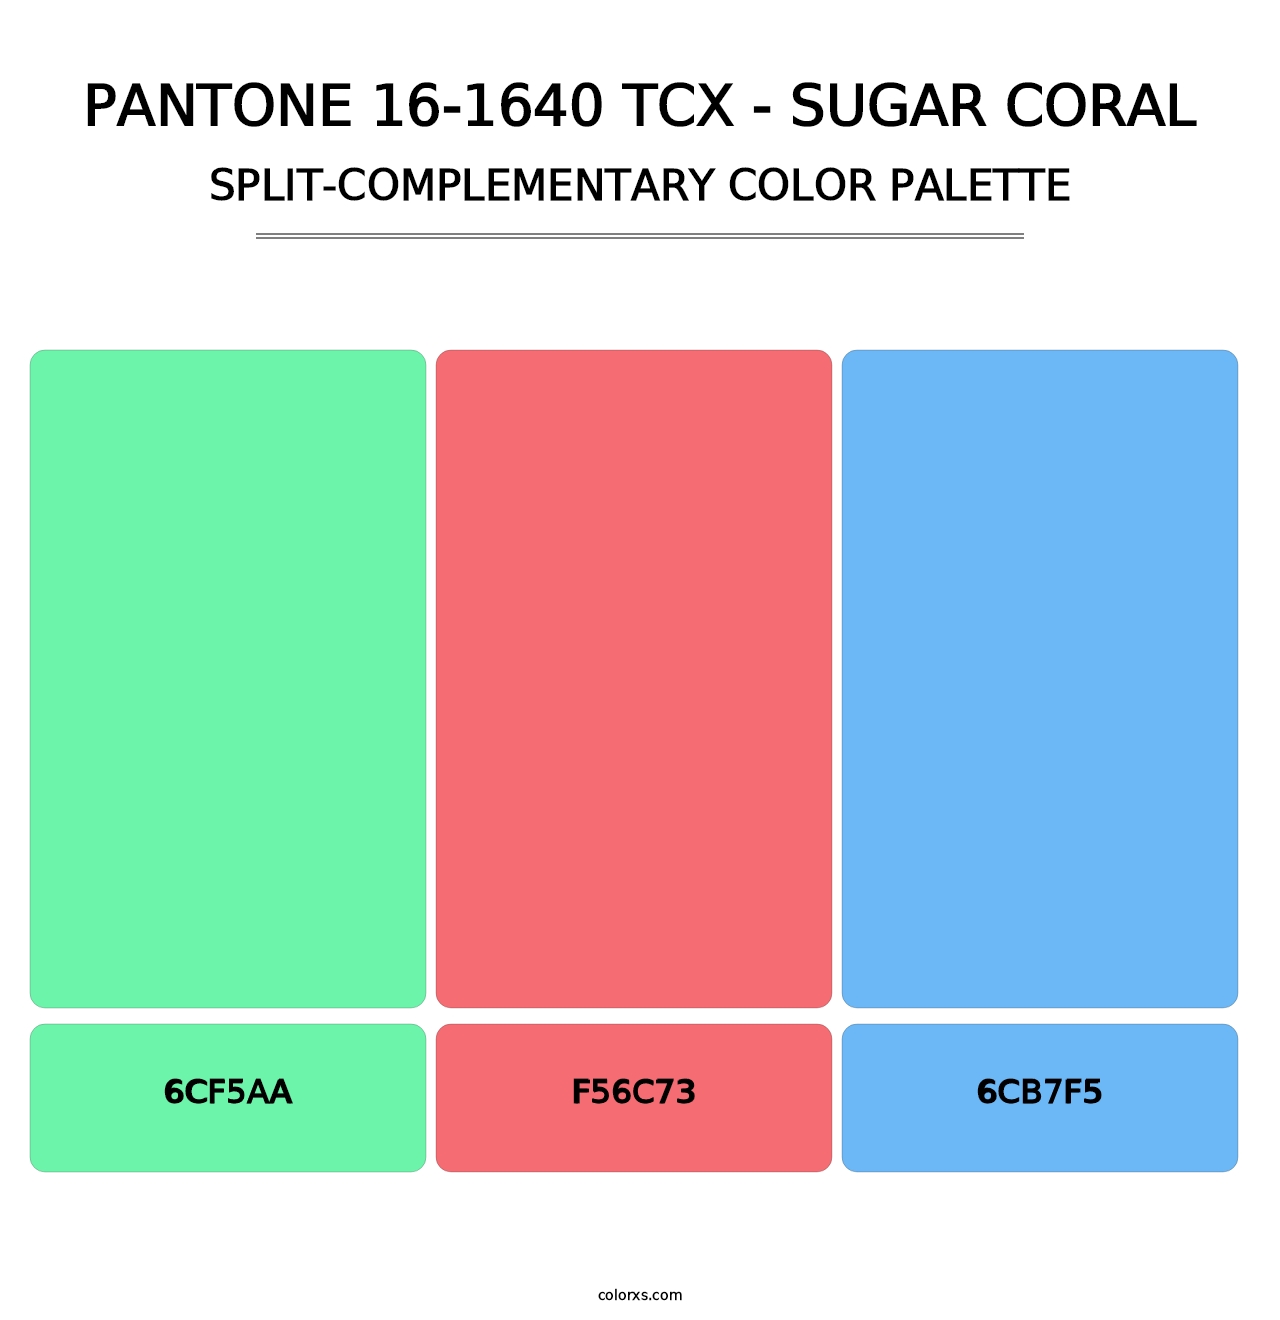 PANTONE 16-1640 TCX - Sugar Coral - Split-Complementary Color Palette